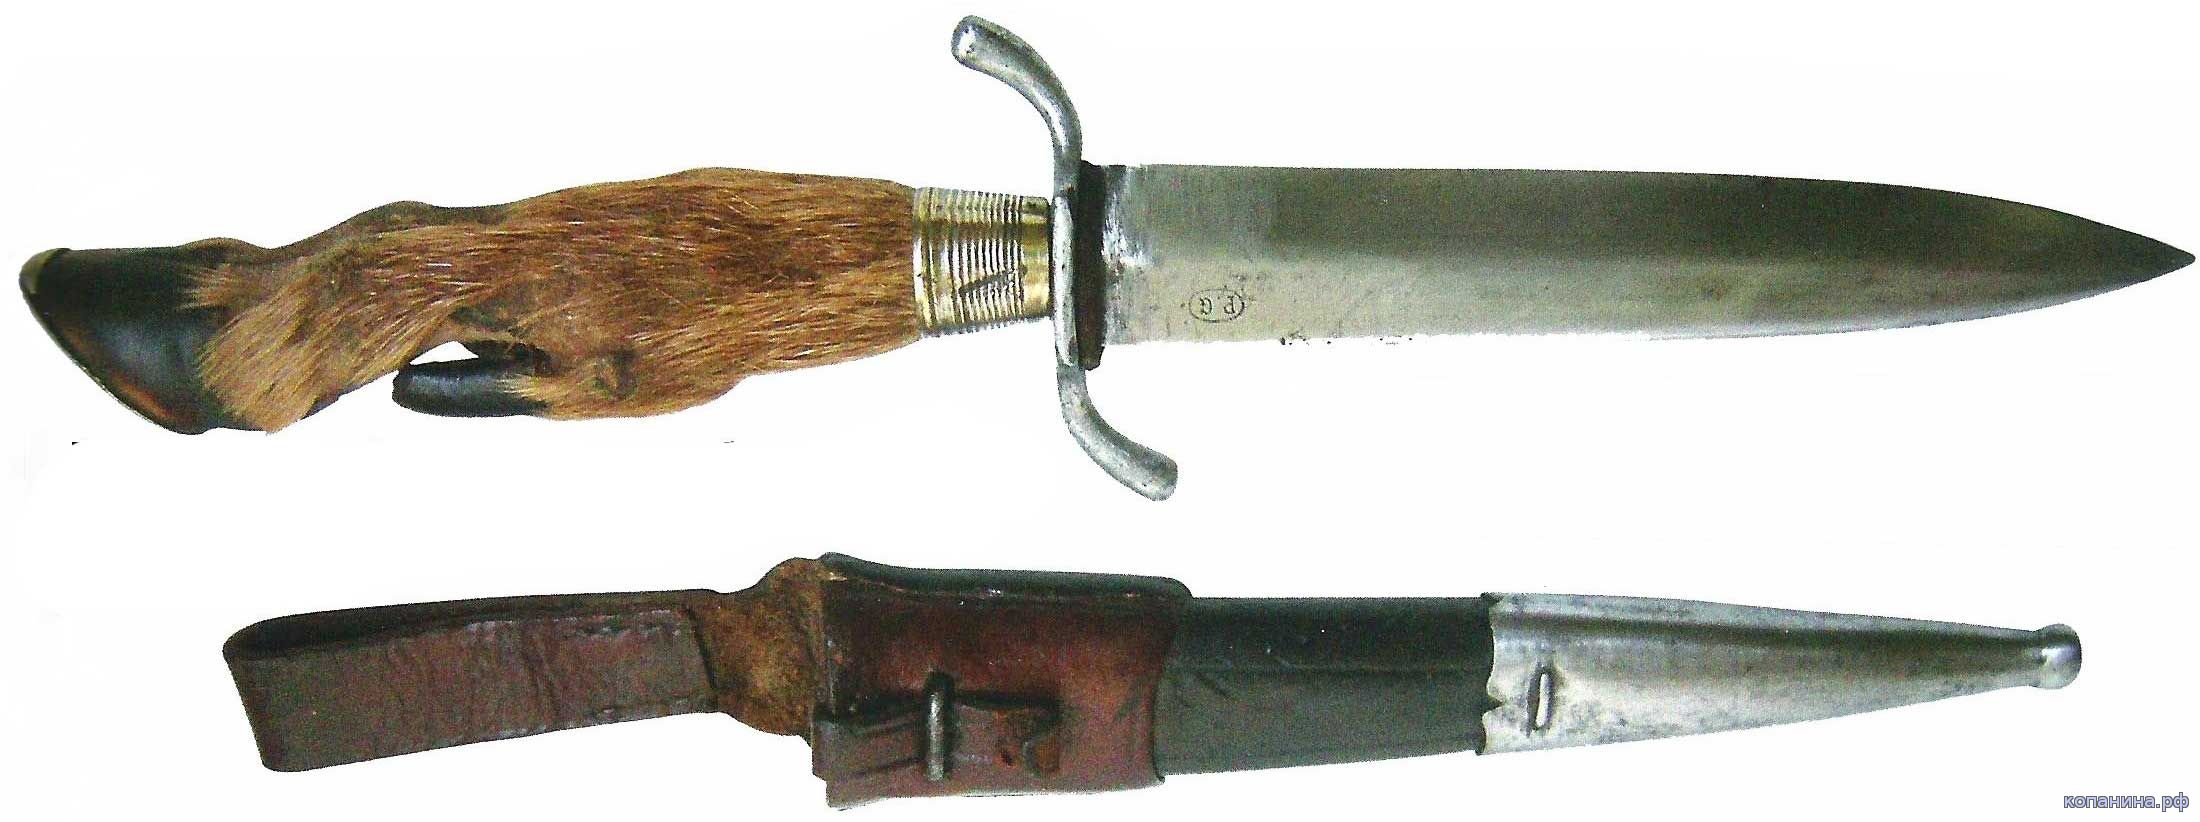 немецкий гражданский нож периода первой мировой войны